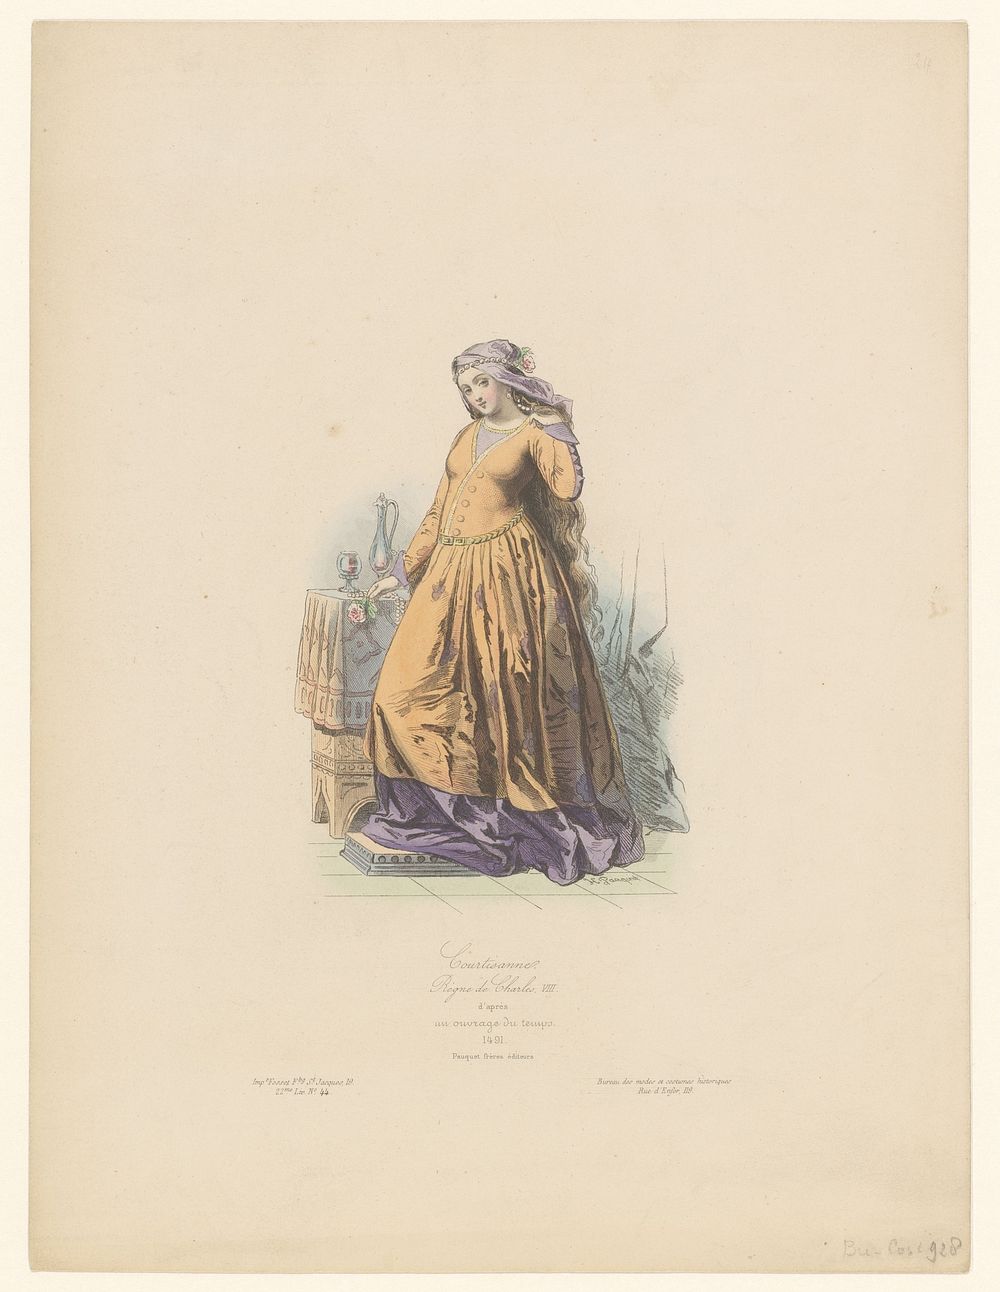 Courtisane, 1491 (1864) by Hippolyte Louis Emile Pauquet, anonymous, imprimeur Fosset and Pauquet Frères